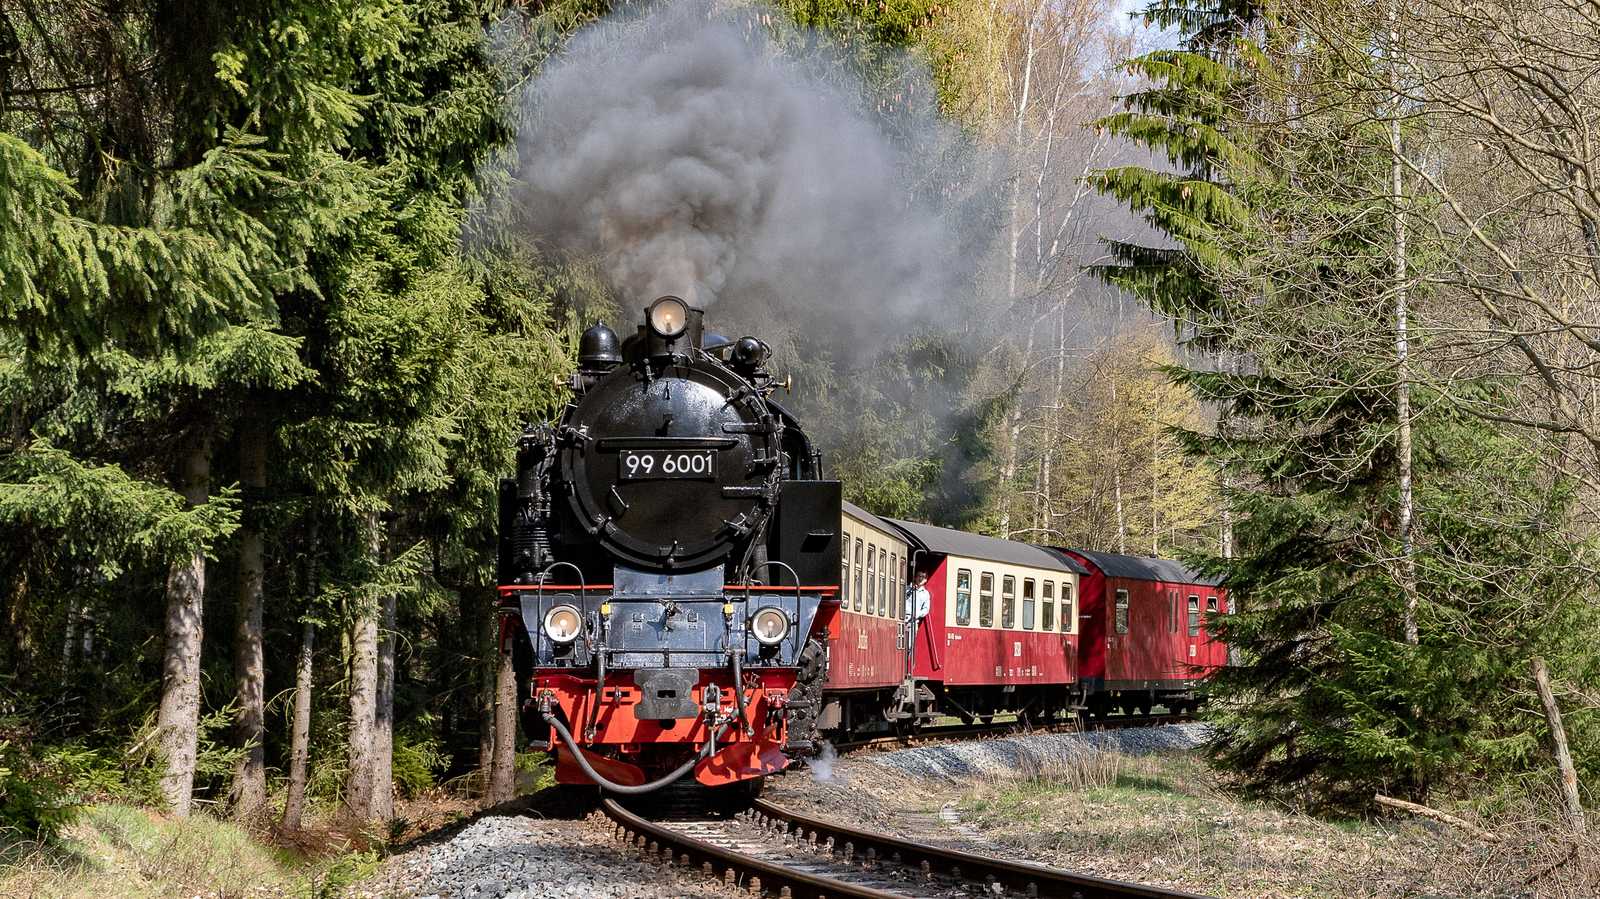 Diese Ausgabe enthält gleich zwei Beiträge über die Schmalspurbahnen im Harz. Zur Einstimmung zeigt Armin-Peter Heinze seine Aufnahme der 99 6001 vor dem Haltepunkt Sternhaus Haferfeld vom 6. April 2019.